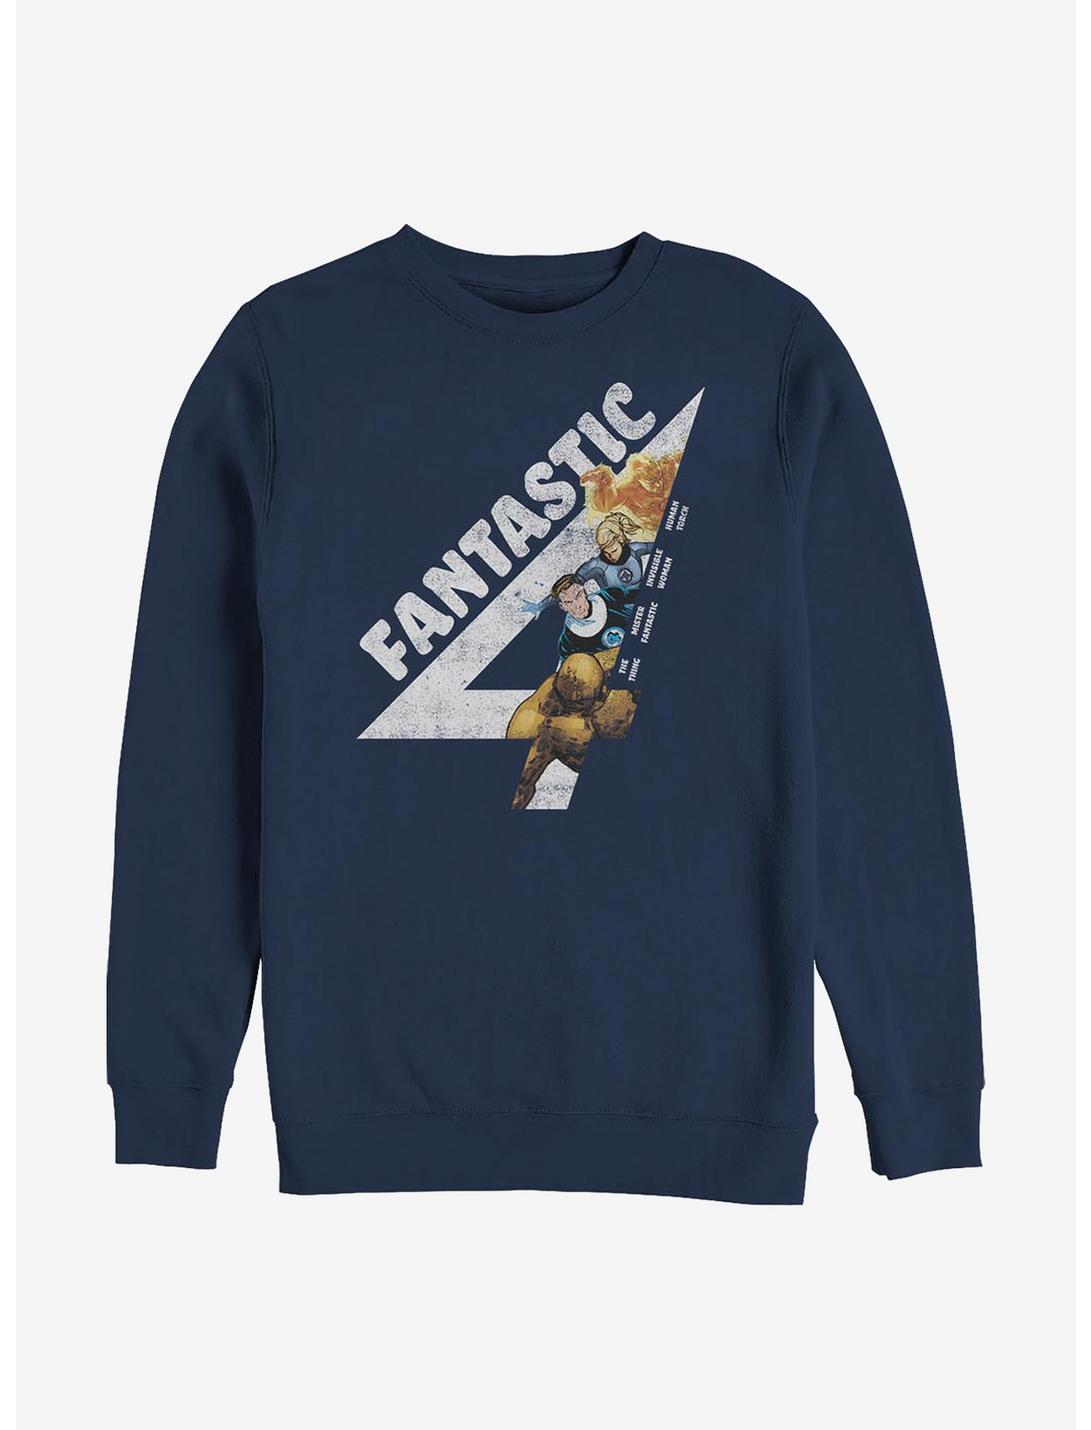 Marvel Fantastic Four Fantastically Vintage Sweatshirt, NAVY, hi-res